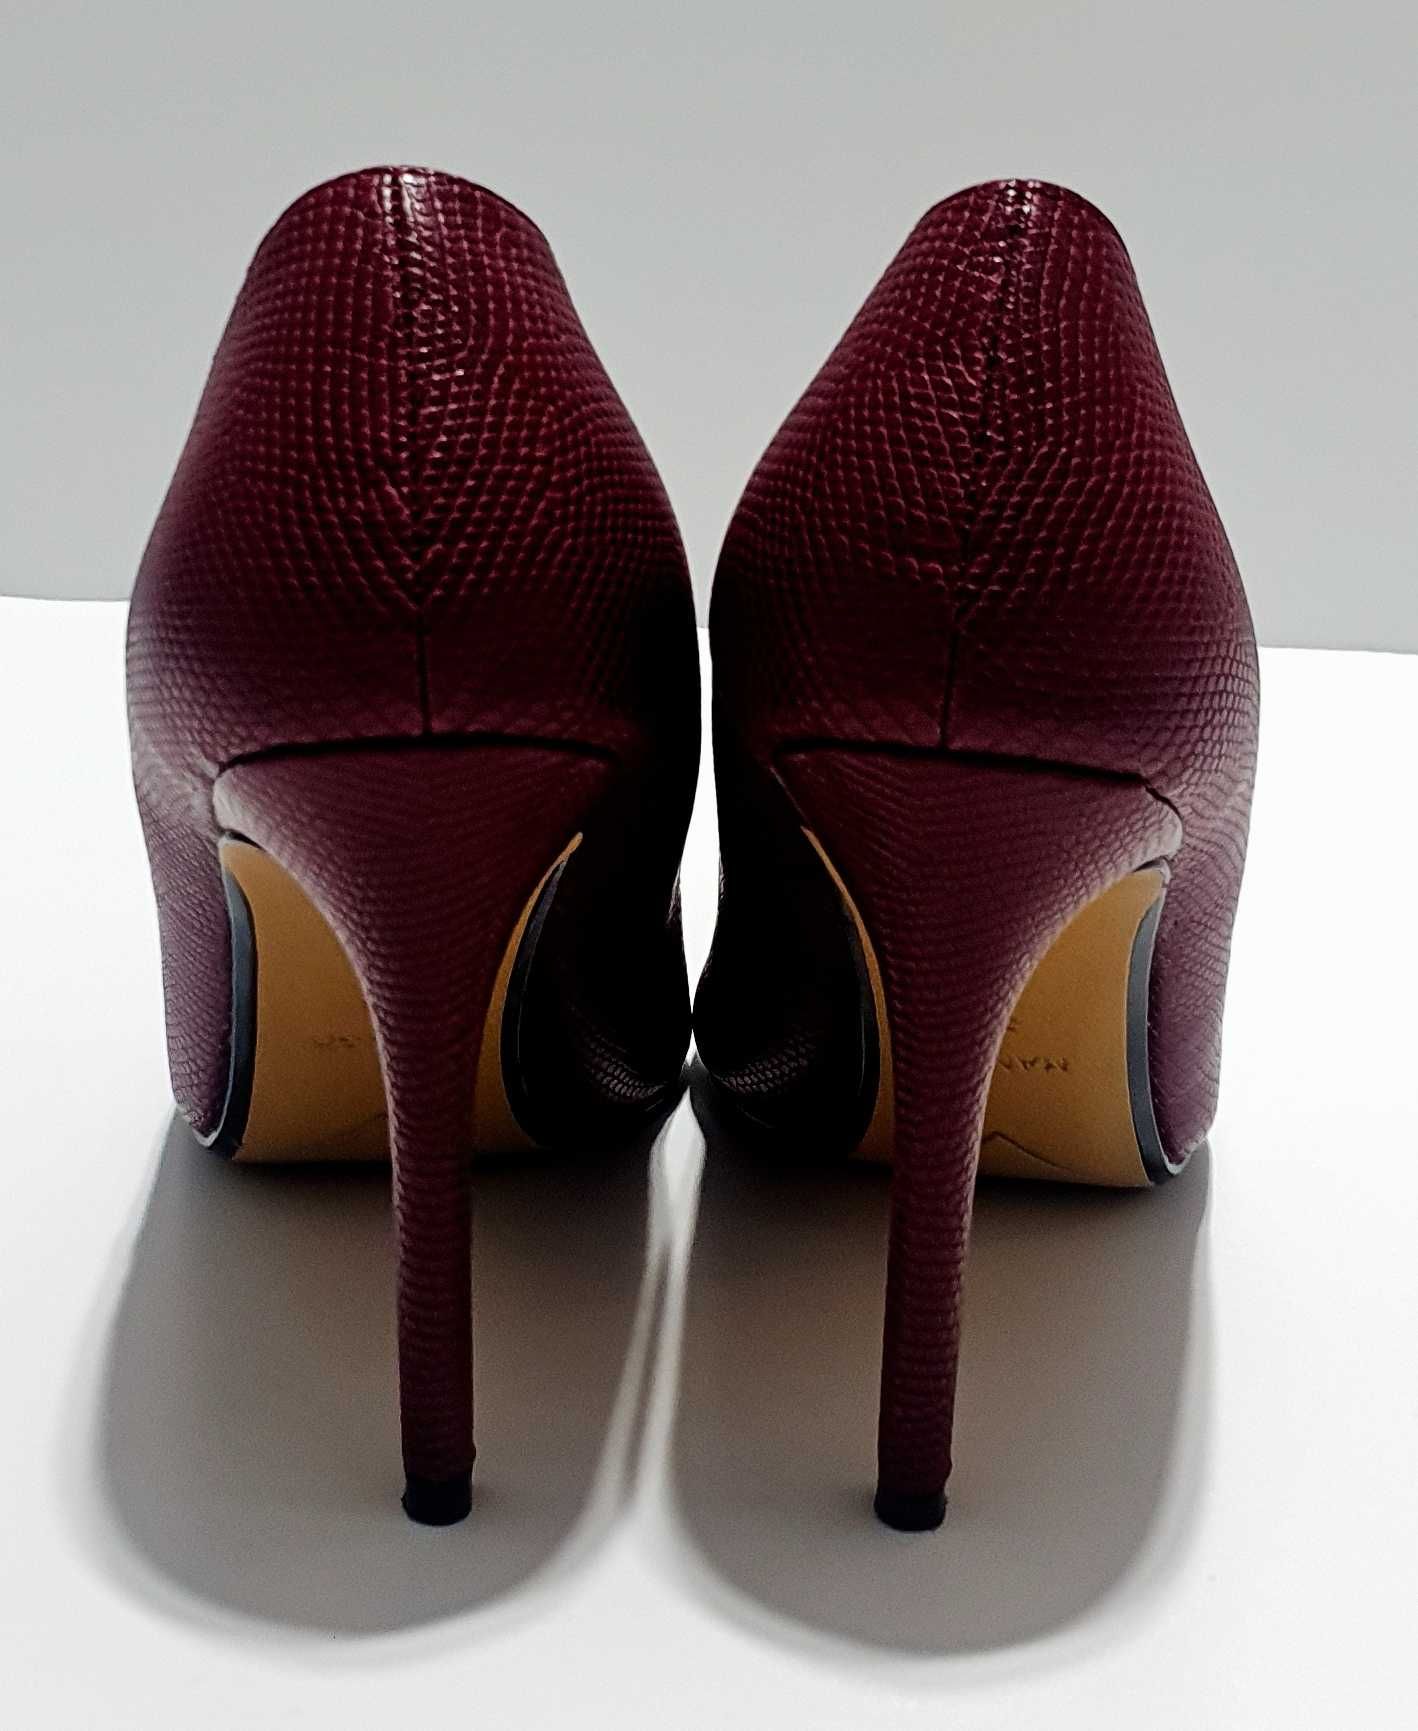 Pantofi Mango stiletto marimea 38 piele naturala toc 10 cm burgundy